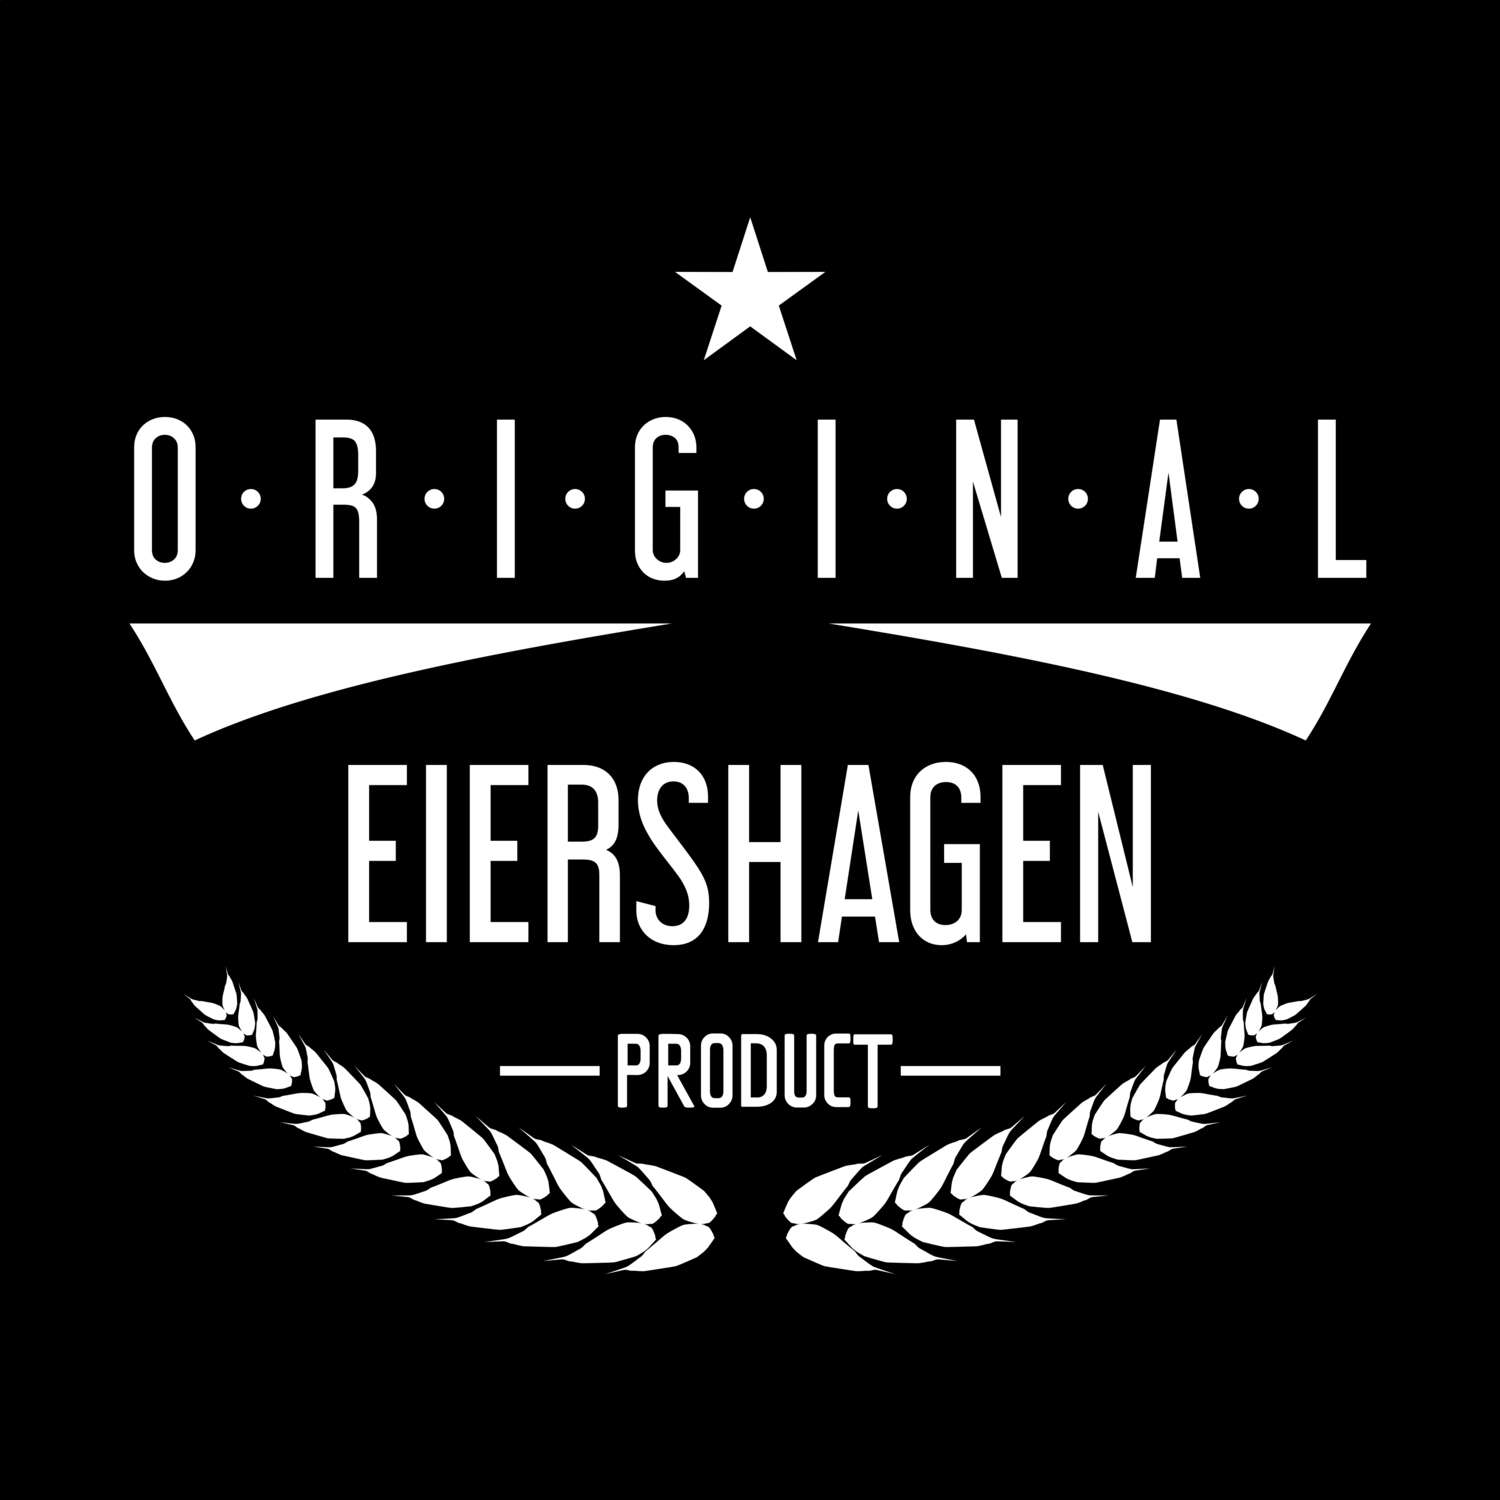 Eiershagen T-Shirt »Original Product«